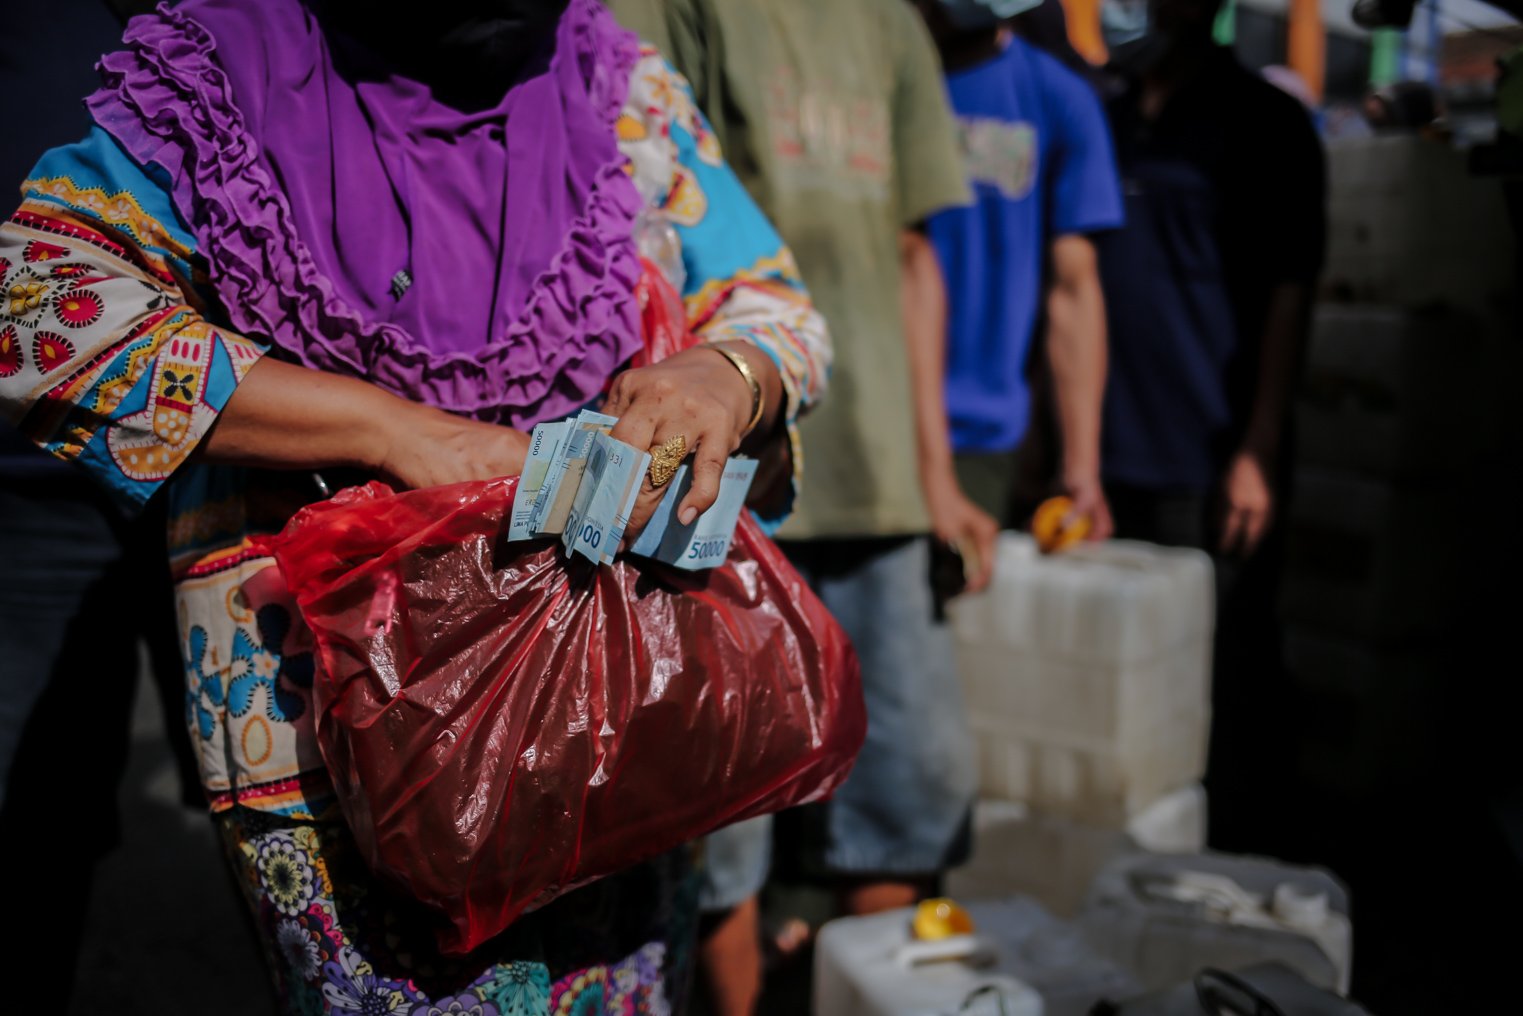 Warga menyiapkan uang saat berbaris mengantre membeli minyak goreng murah di Pasar Kramat Jati, Jakarta, Kamis (3/2/2022). Berdasarkan kebijakan pemerintah Harga Eceran Tertinggi (HET) untuk minyak goreng curah Rp 11.500 per liter, minyak goreng kemasan sederhana Rp 13.500 per liter dan minyak goreng premium Rp 14.500 per liter.